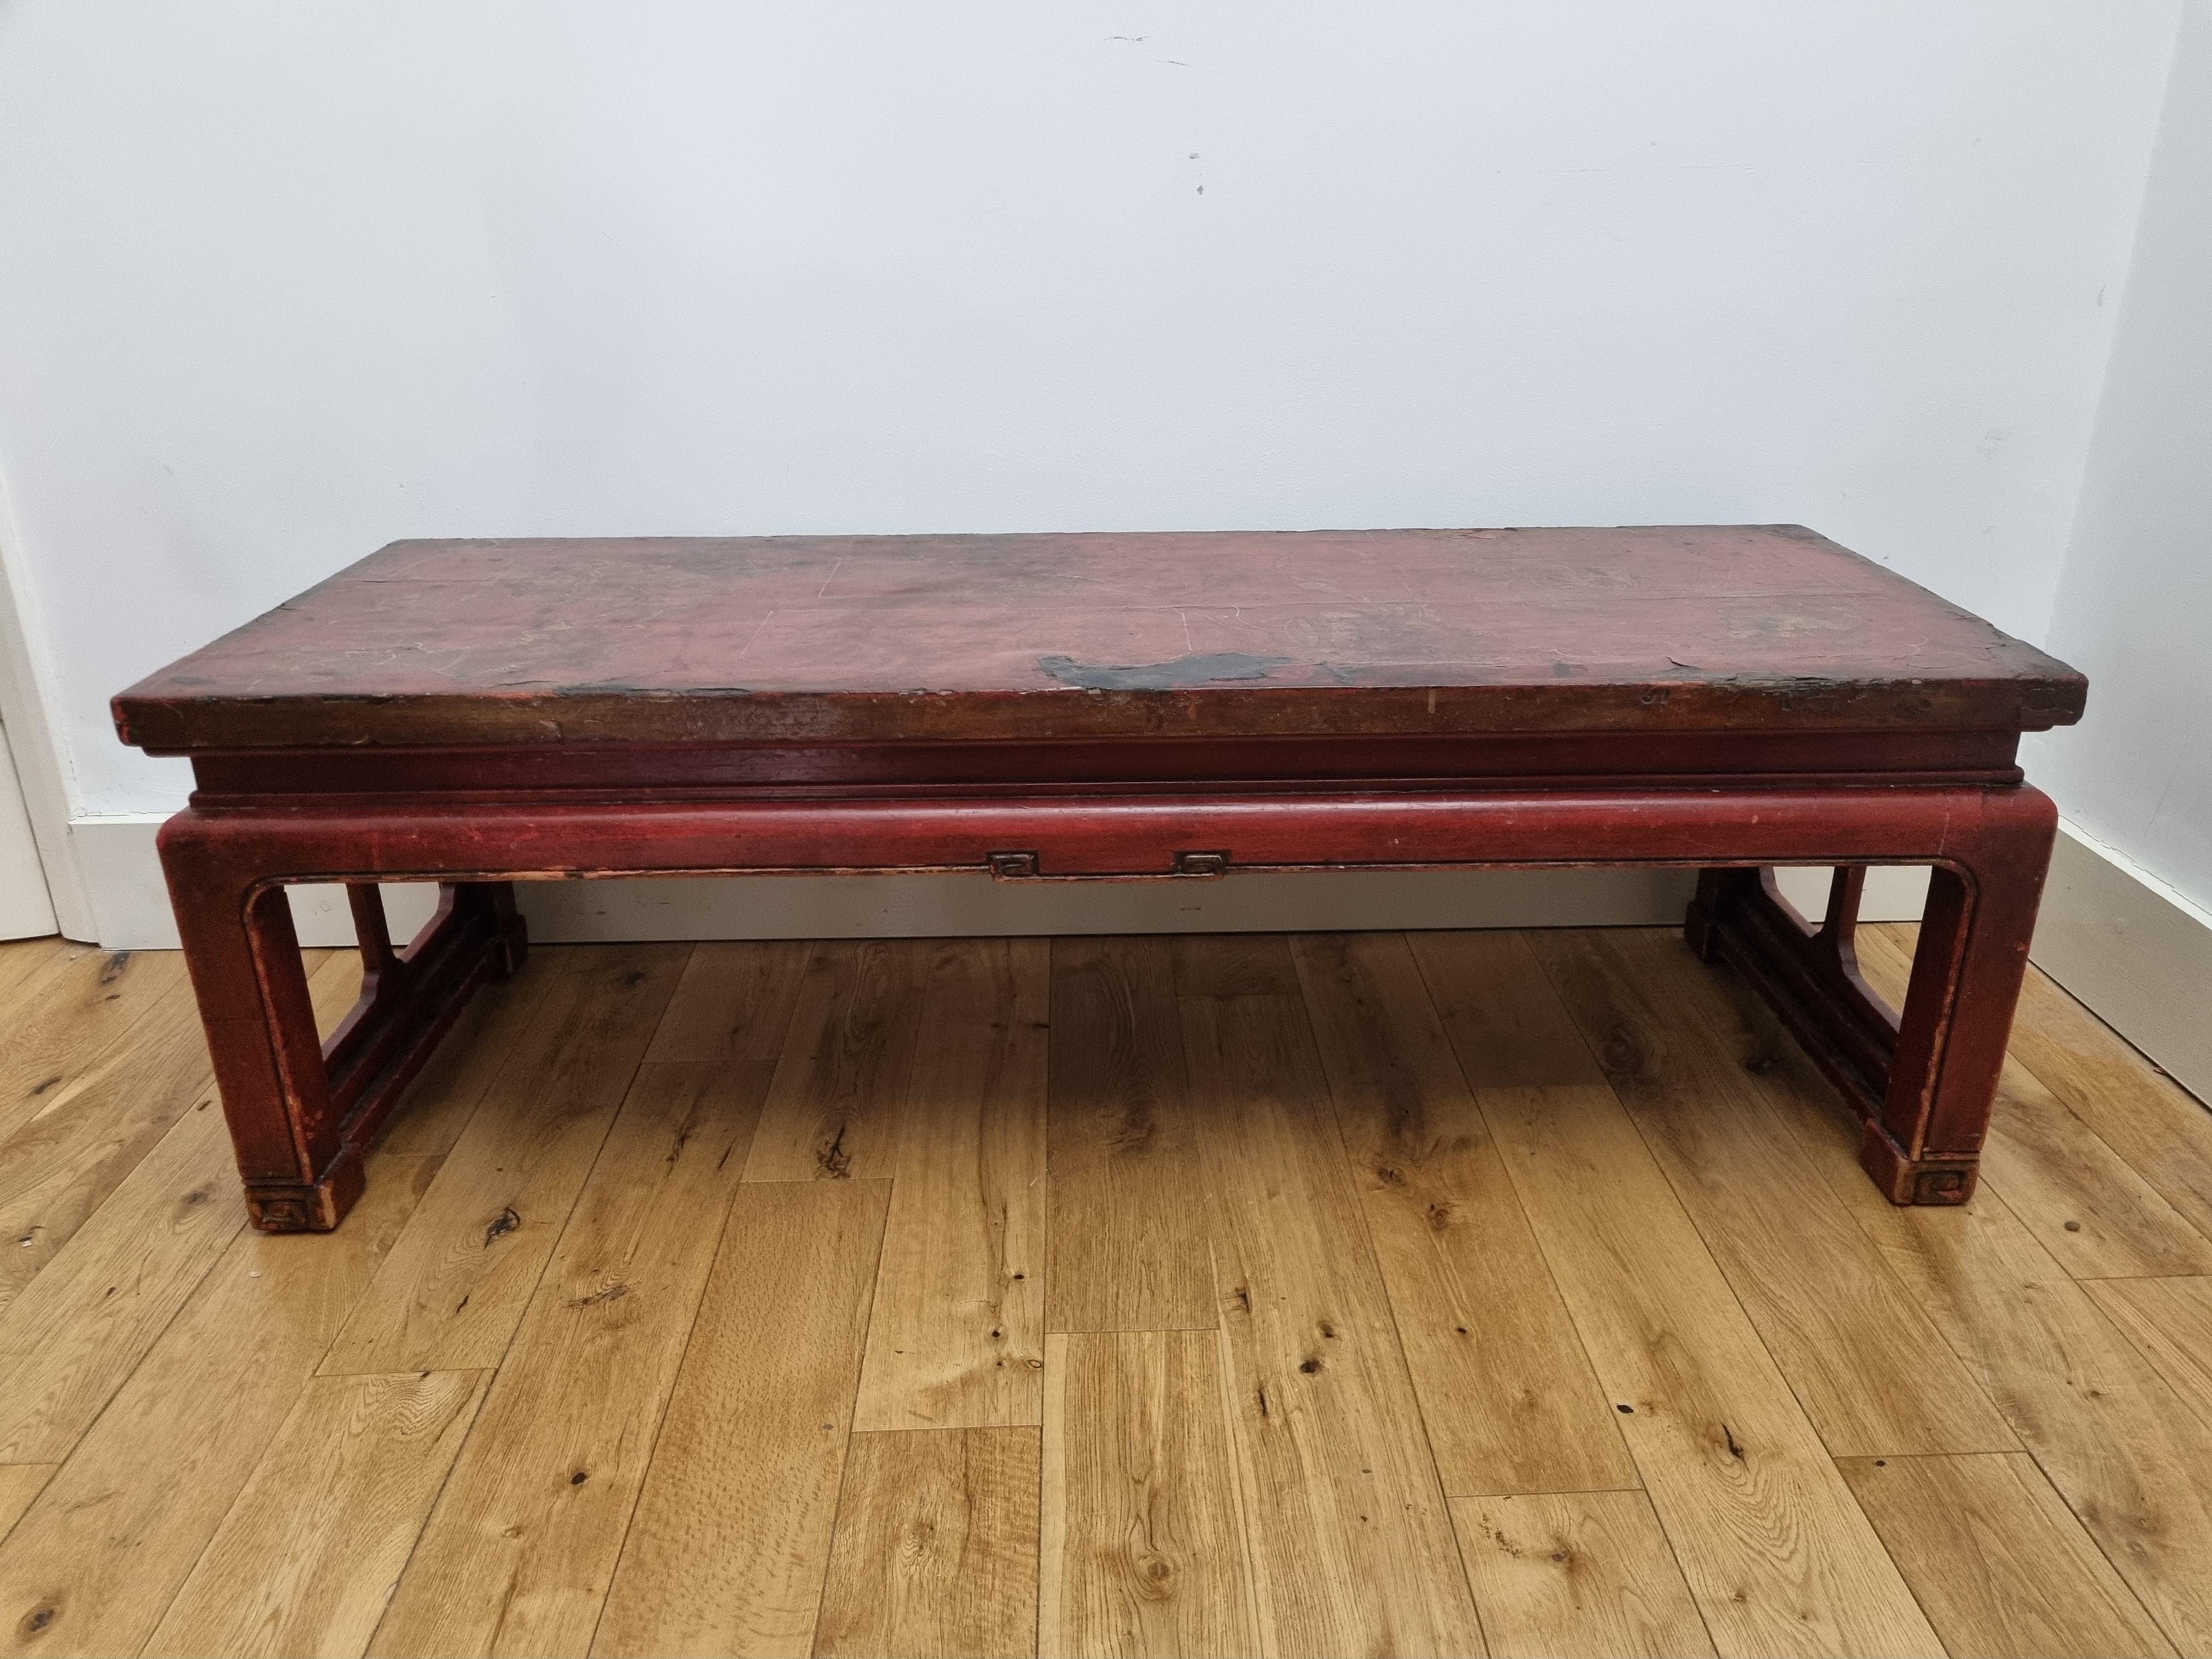 Ein rot lackierter chinesischer Shanxi-Tisch aus dem späten 19. Jahrhundert, wunderschön handbemalt mit floralen Motiven und chinesischer Kalligraphie.
Es wurde mit viel Liebe zum Detail hergestellt und ist strukturell solide.
Die lackierte